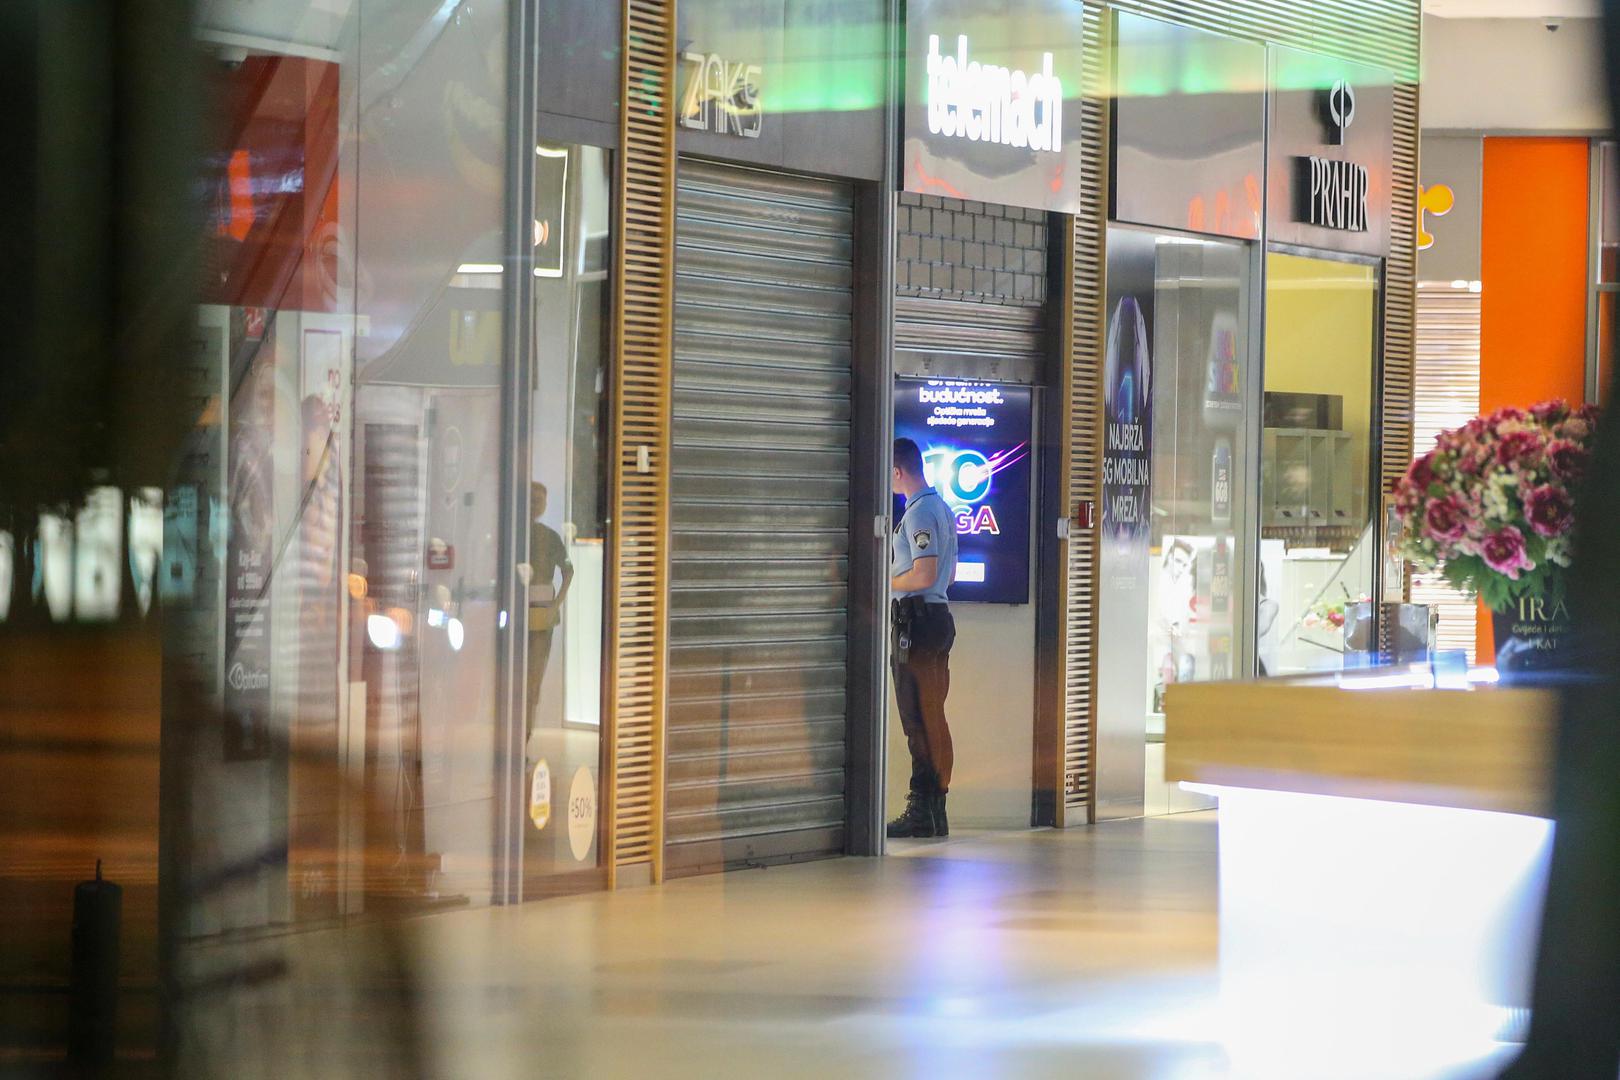 15.06.2022., Zagreb - Pronadjeno tijelo u shoping centru Avenue Mall. Policija trenutno provodi ocevid.  Photo: Matija Habljak/PIXSELL